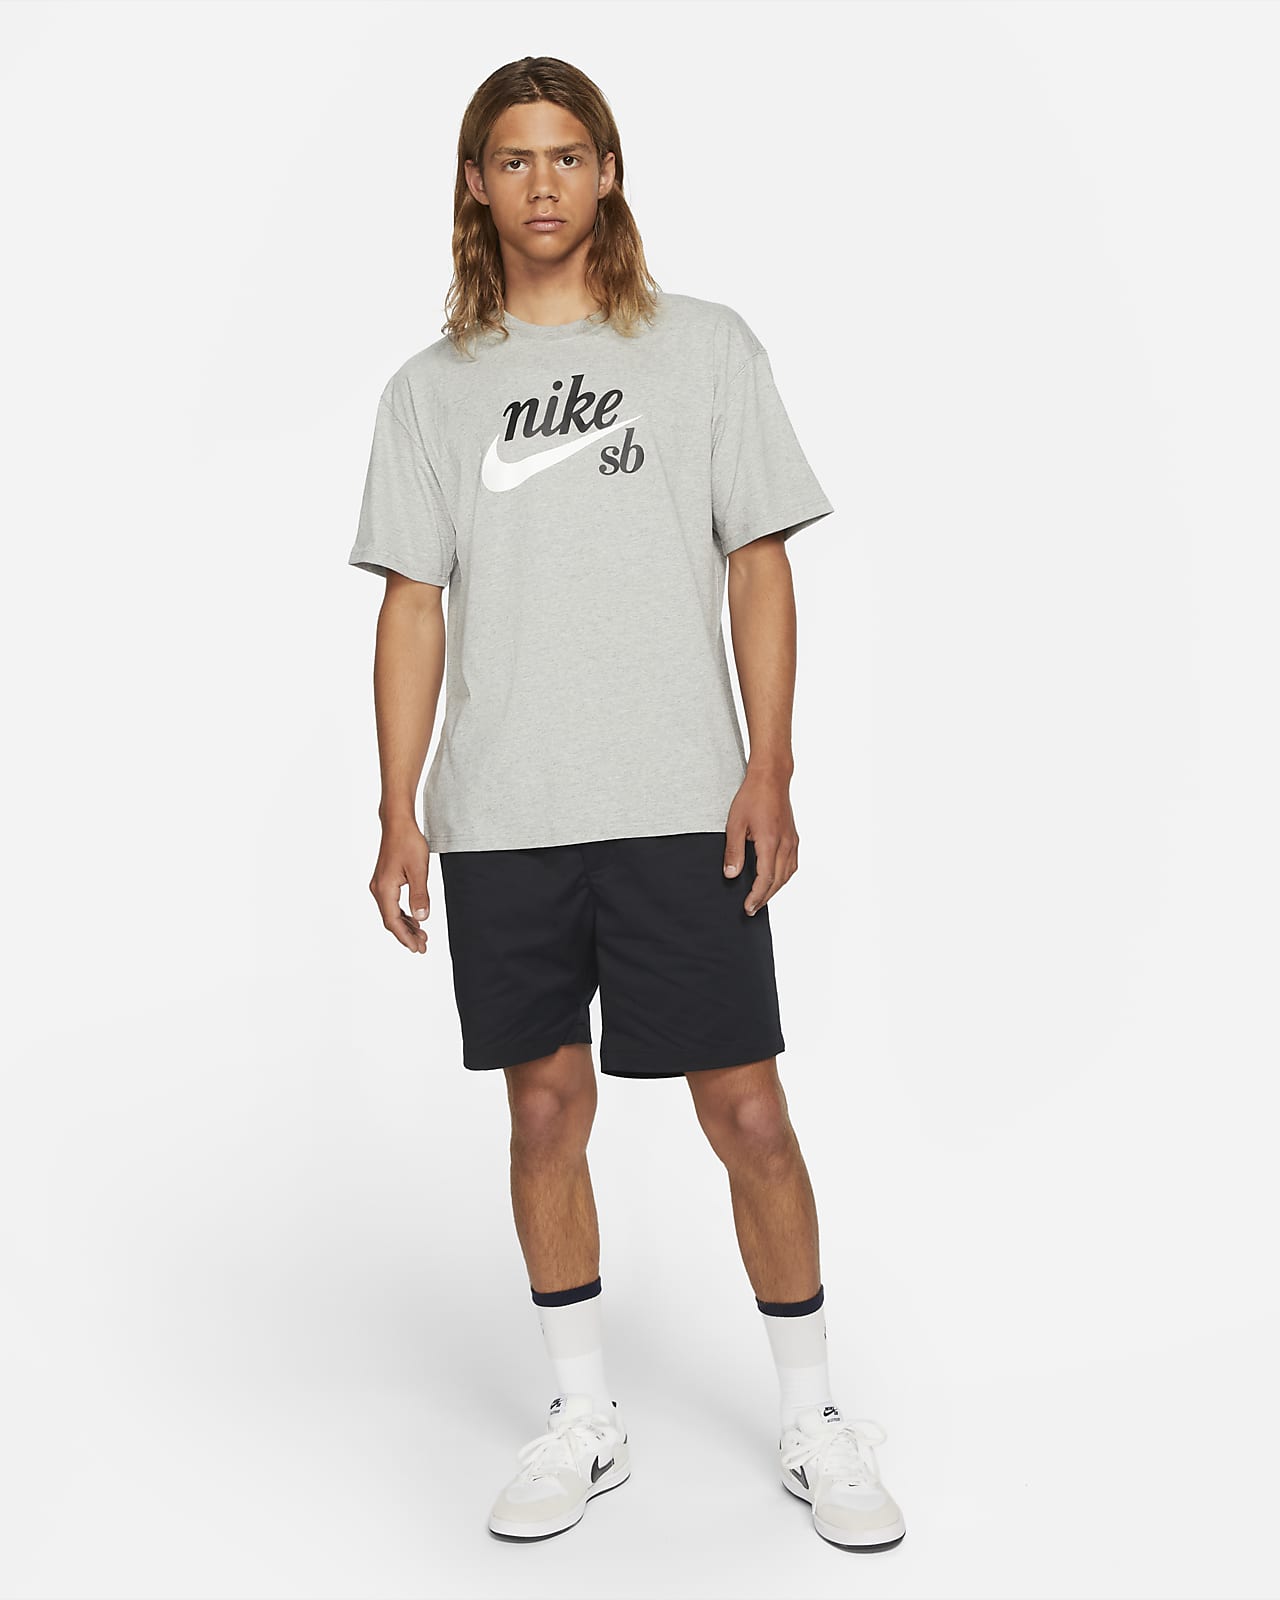 Elke week residu Op en neer gaan Nike SB Skate T-Shirt. Nike.com